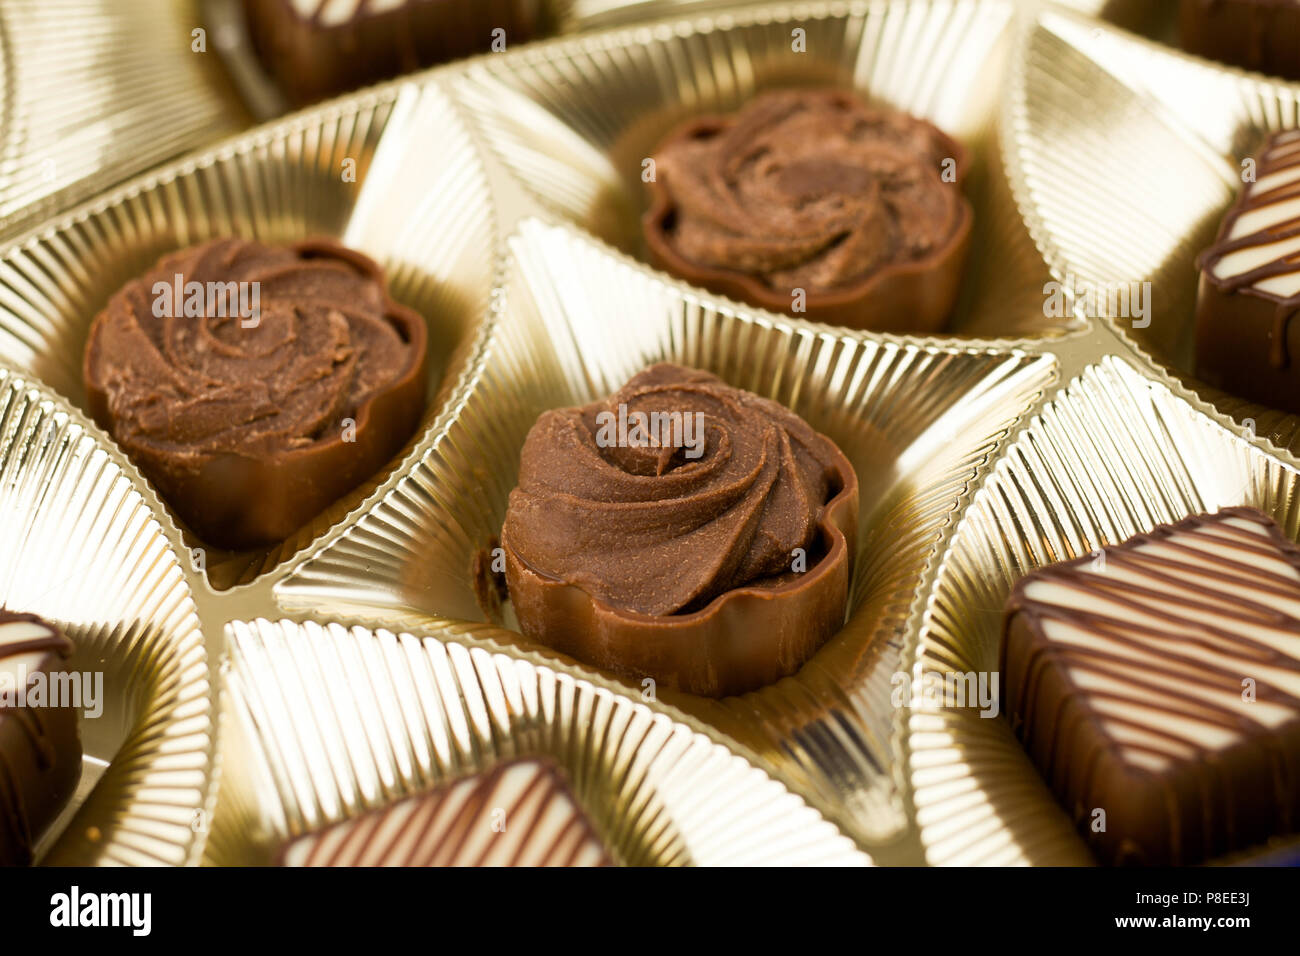 Gruppo di dolci al cioccolato su uno sfondo bianco, isolato Foto Stock